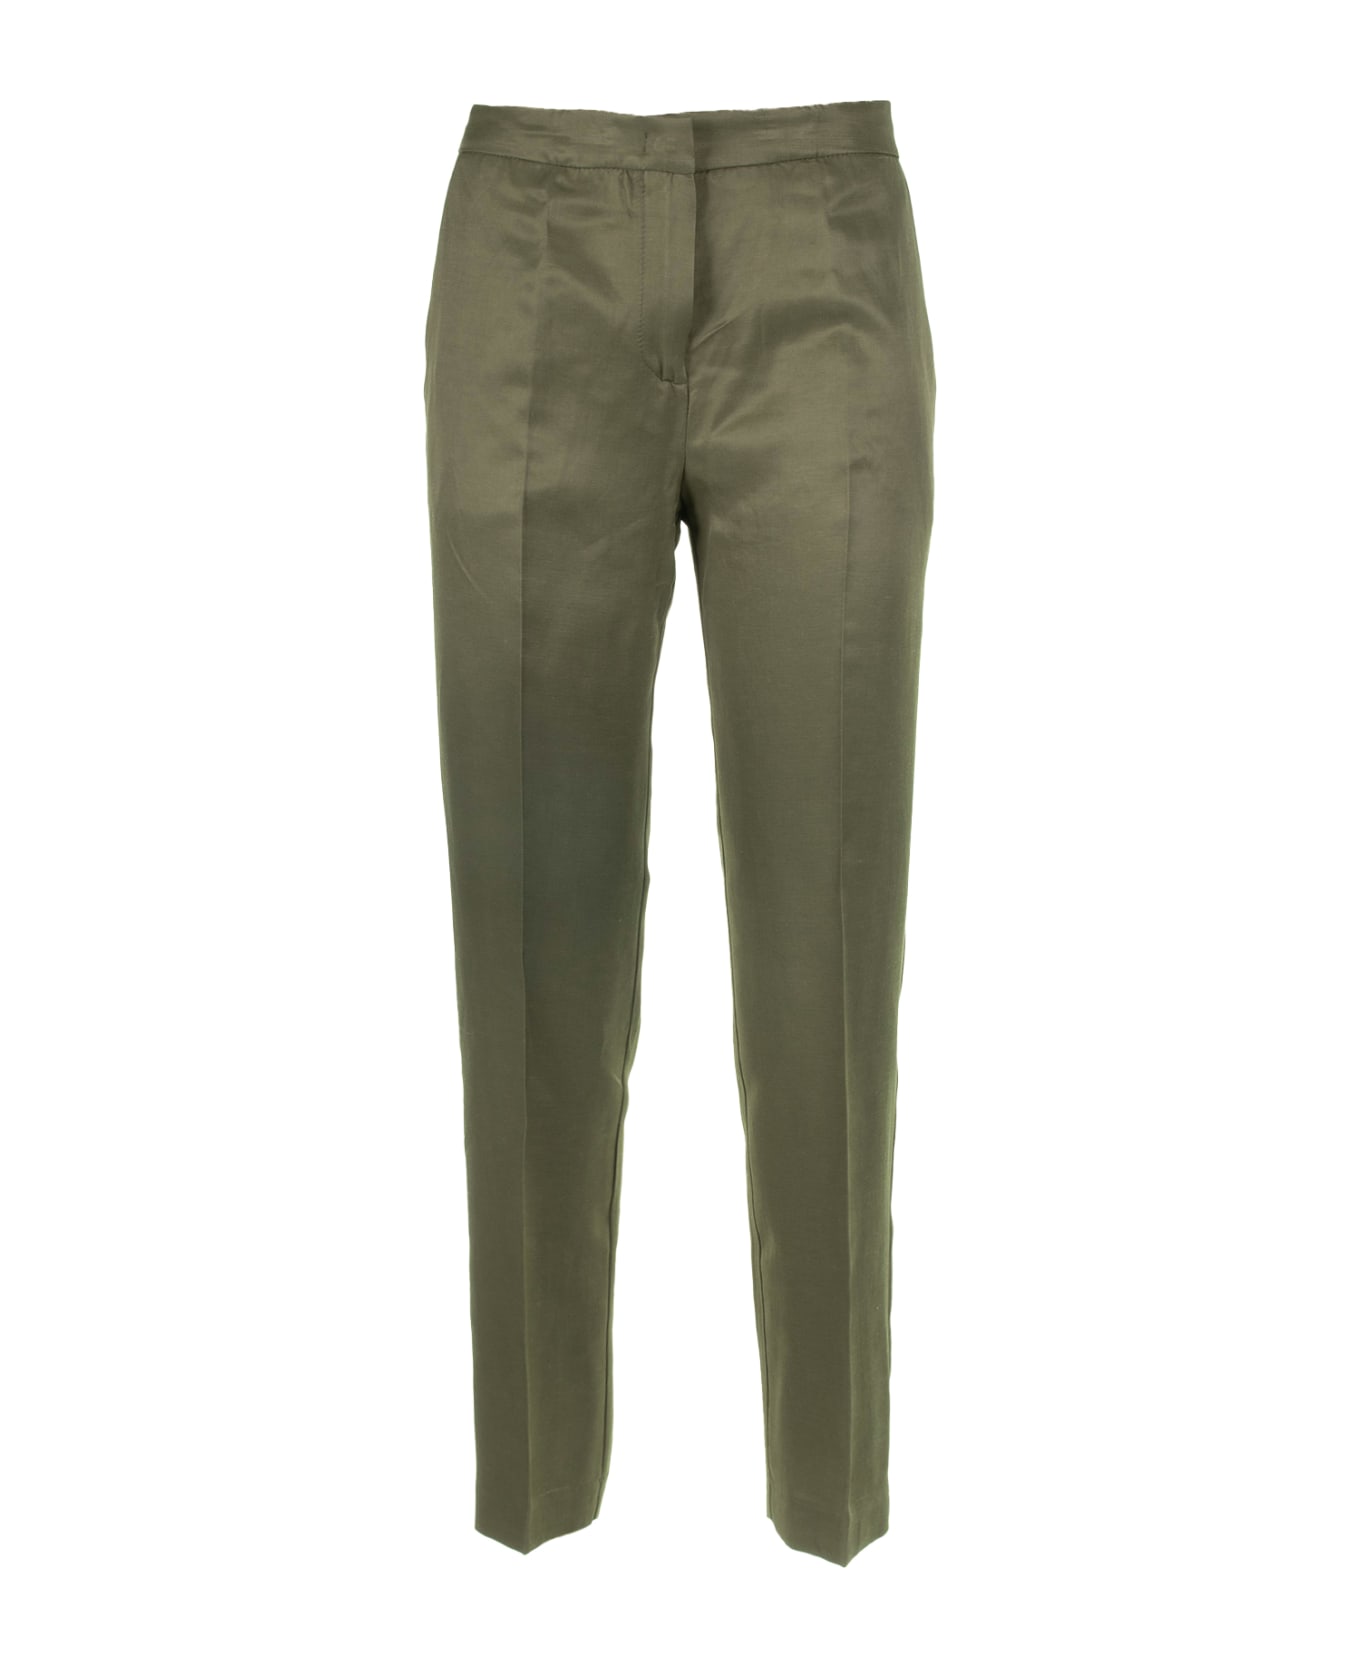 Kaos Military Green Slim Trousers - MILITARE